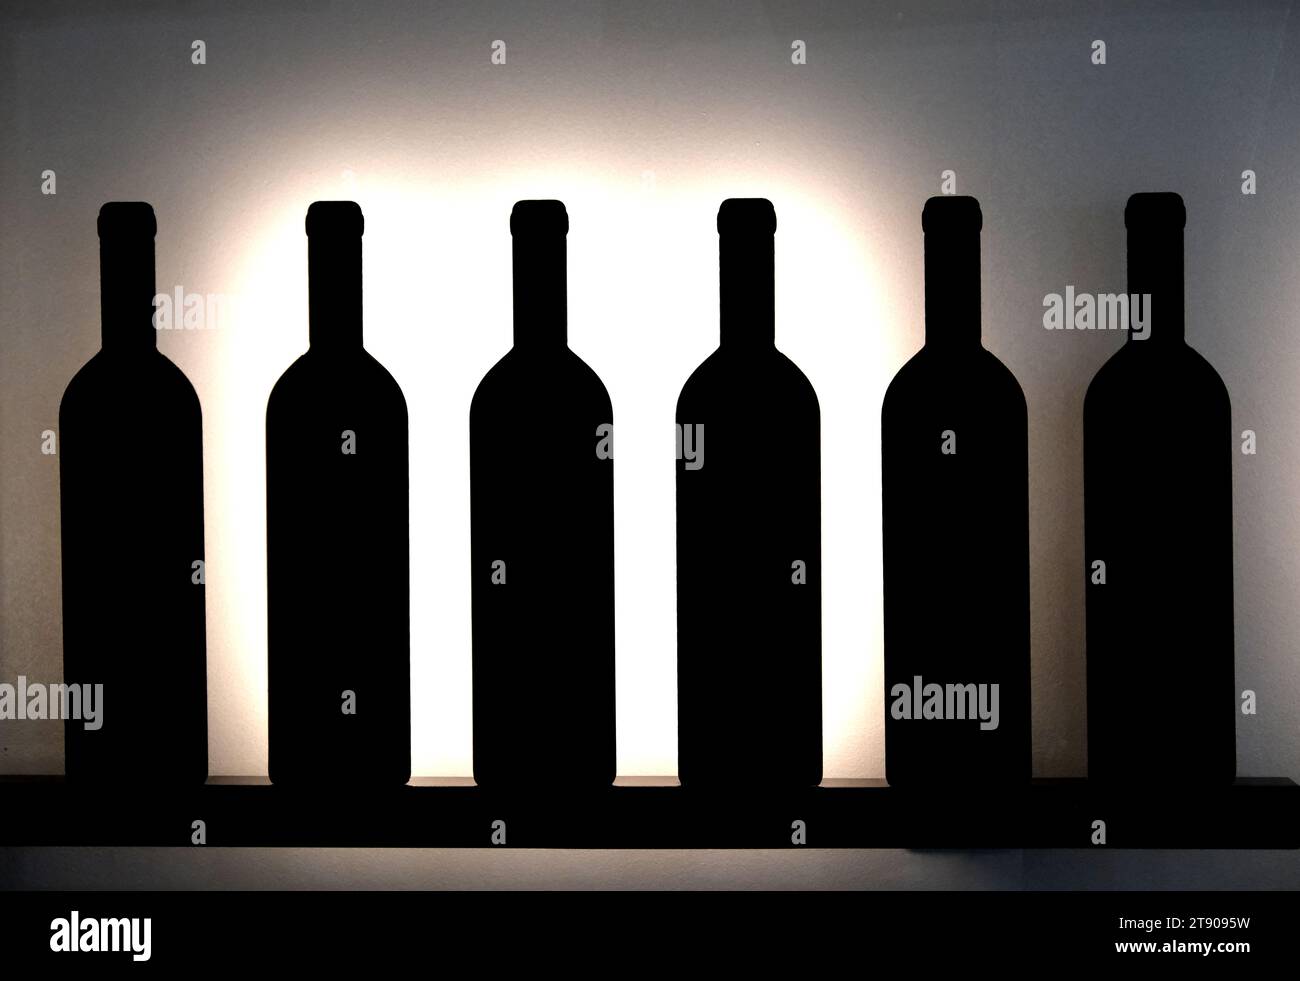 Bottles at La Cite du Vin in Bordeaux France Stock Photo